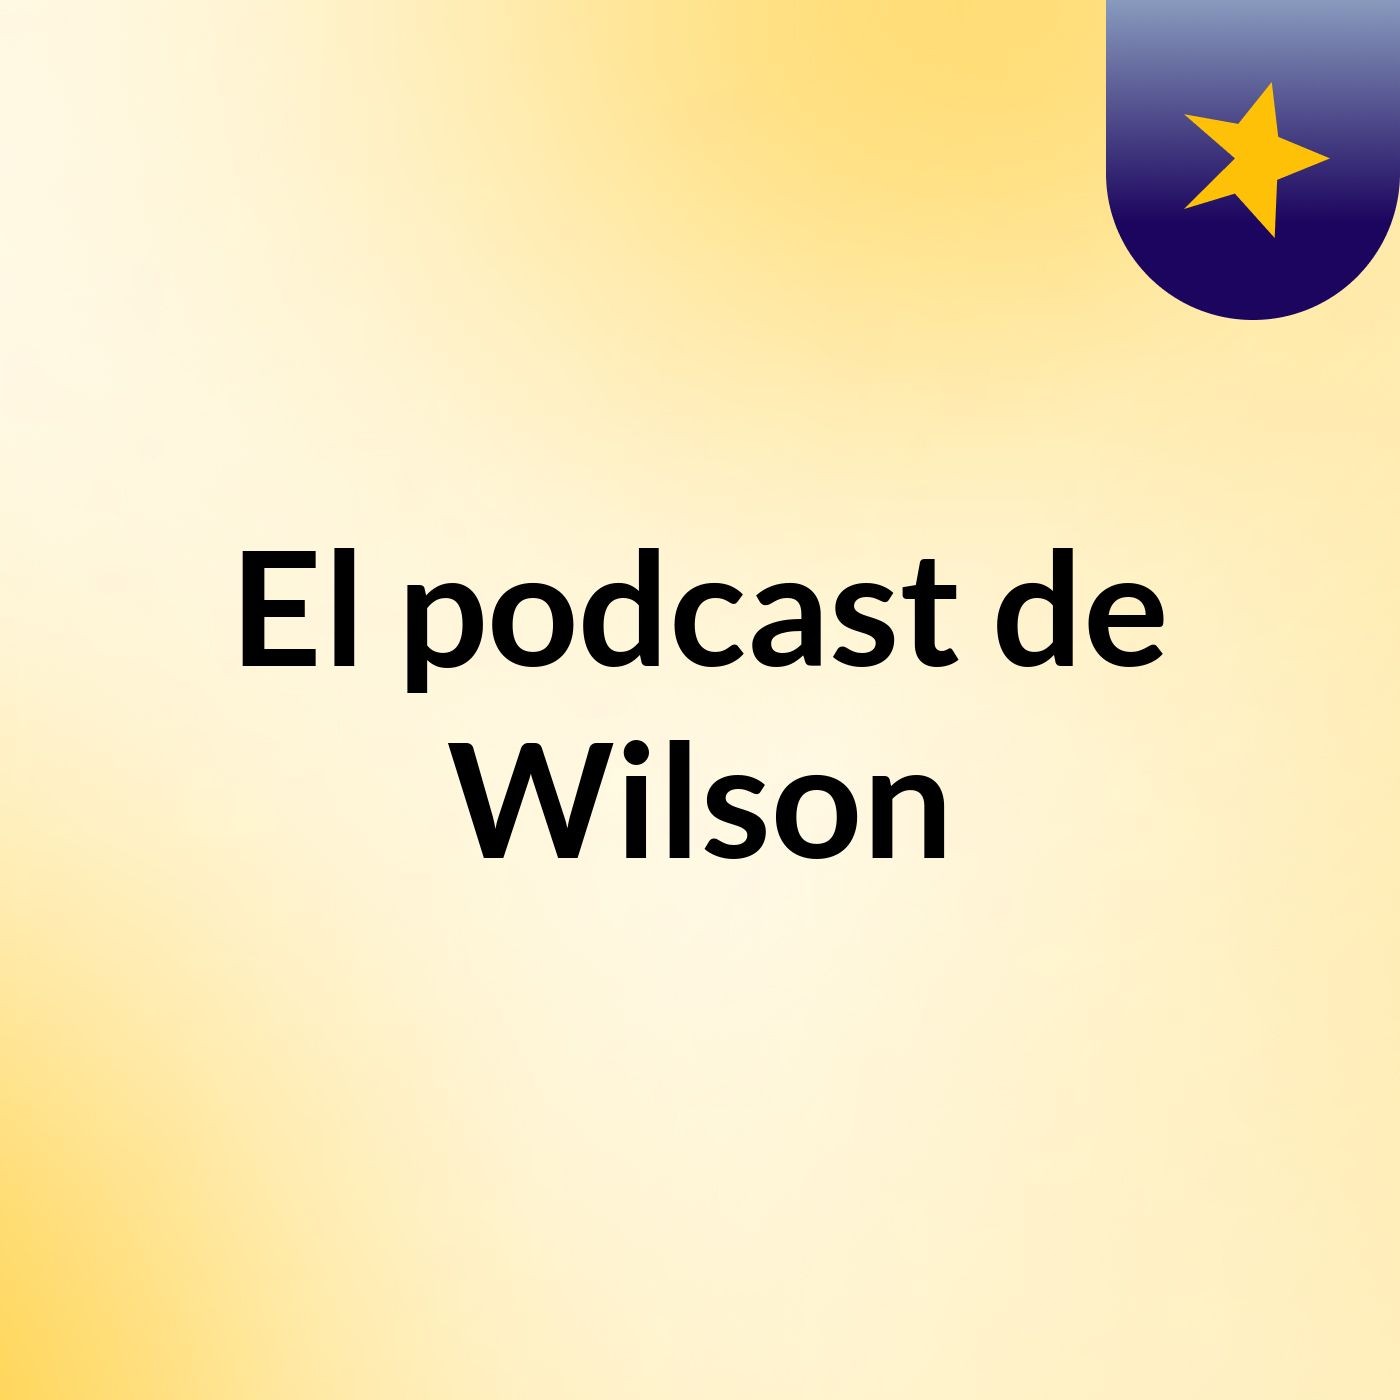 Episodio 6 - El podcast de Wilson